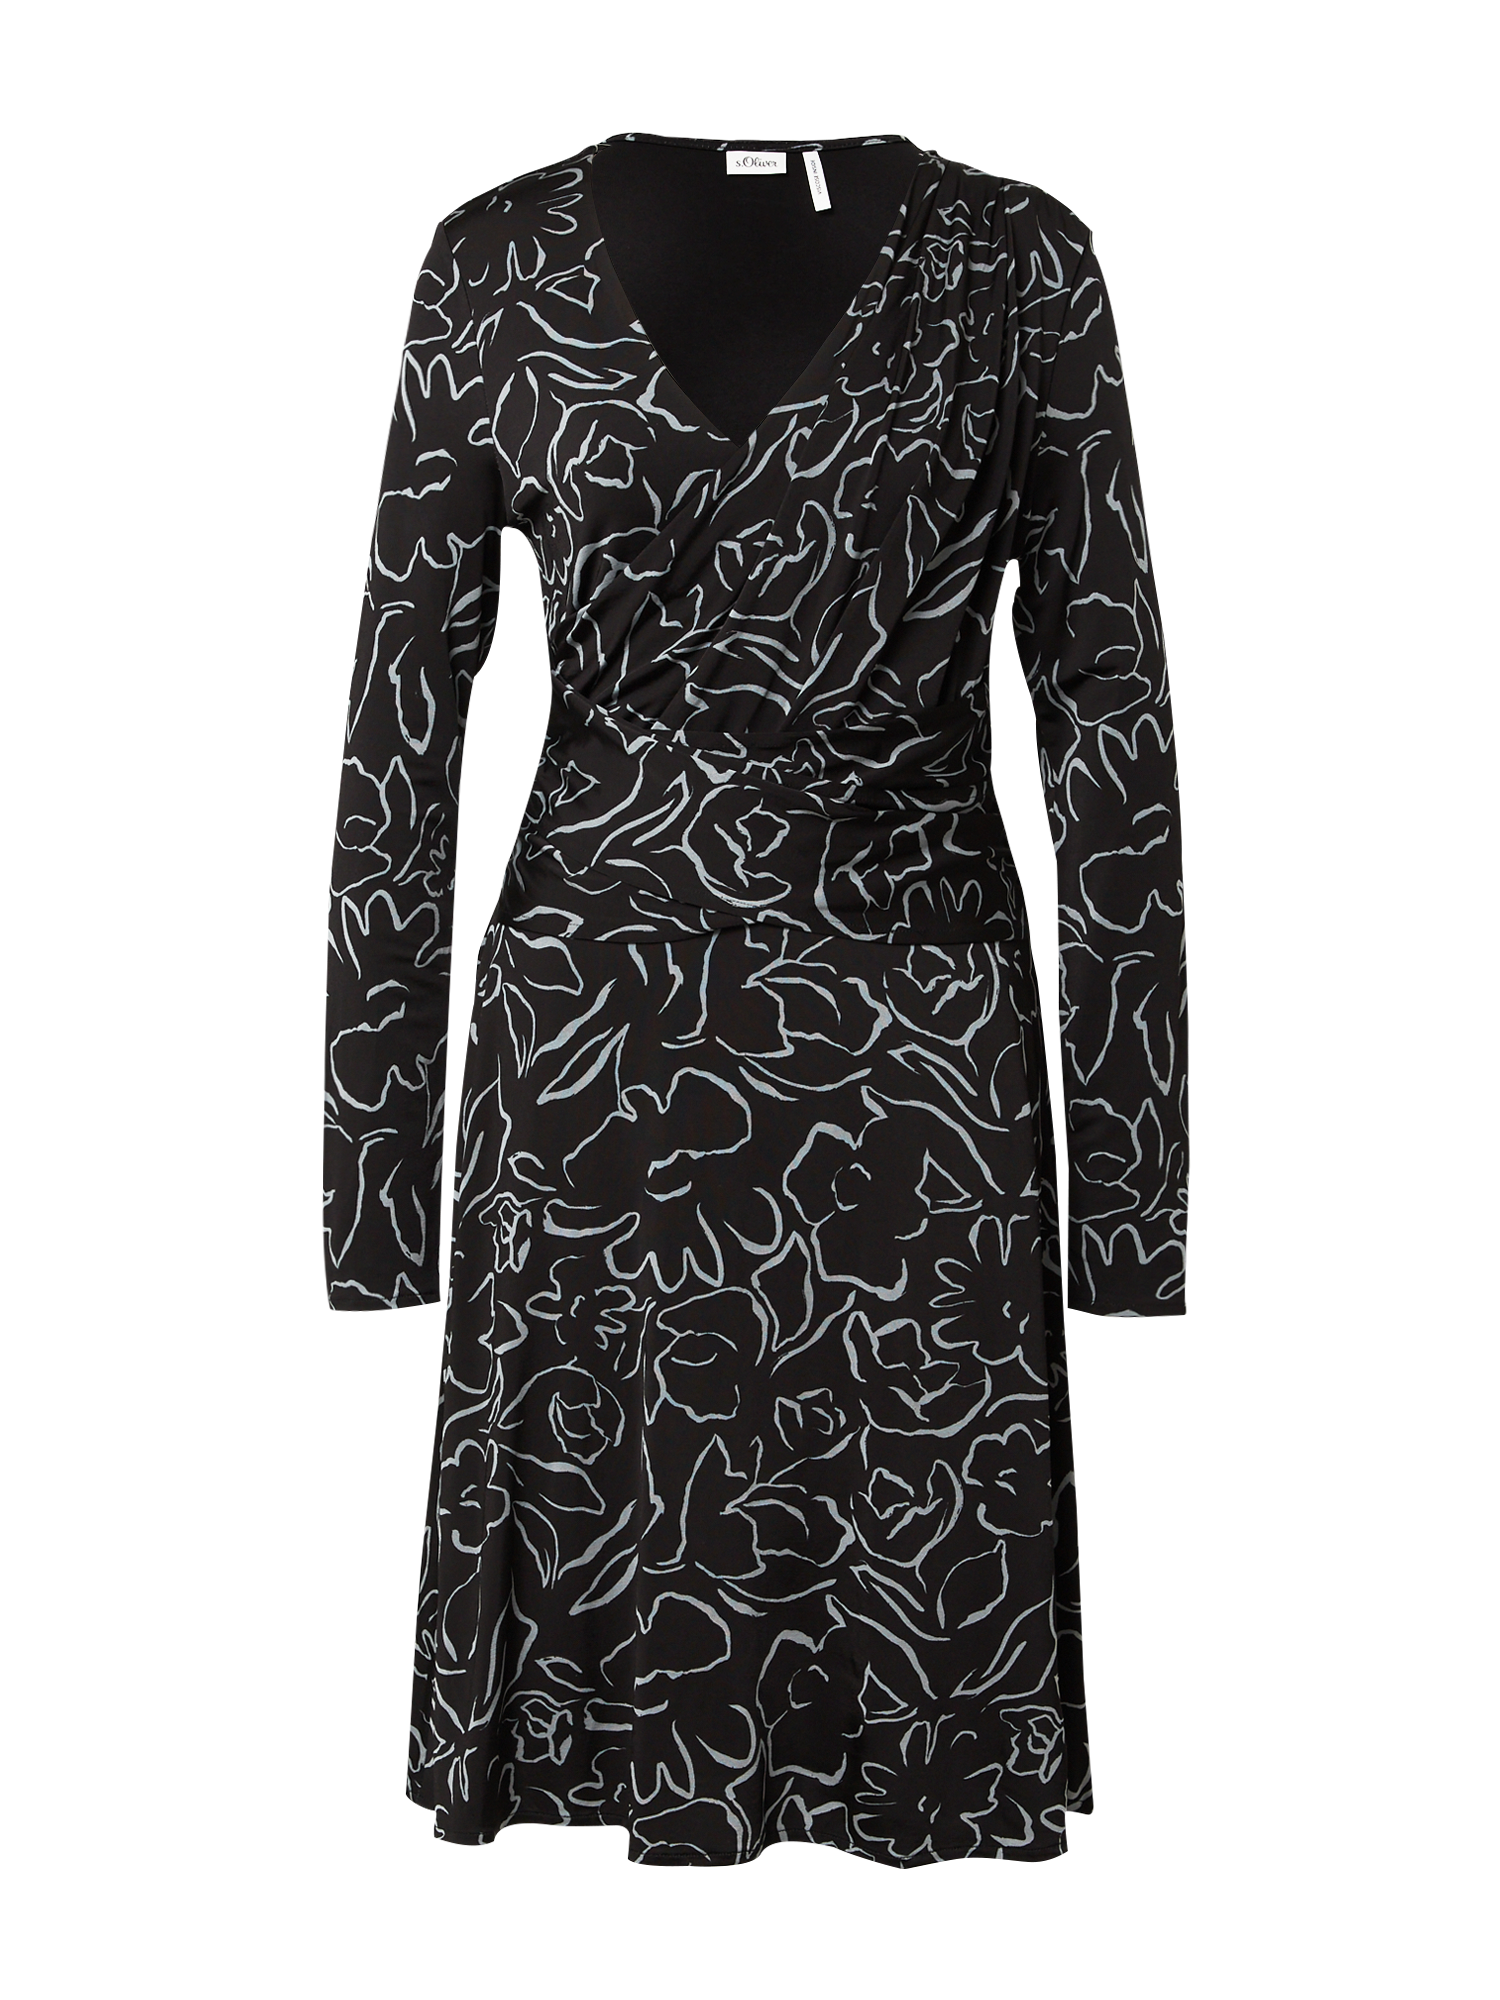 Specjalne okazje Kobiety s.Oliver BLACK LABEL Sukienka w kolorze Czarnym 